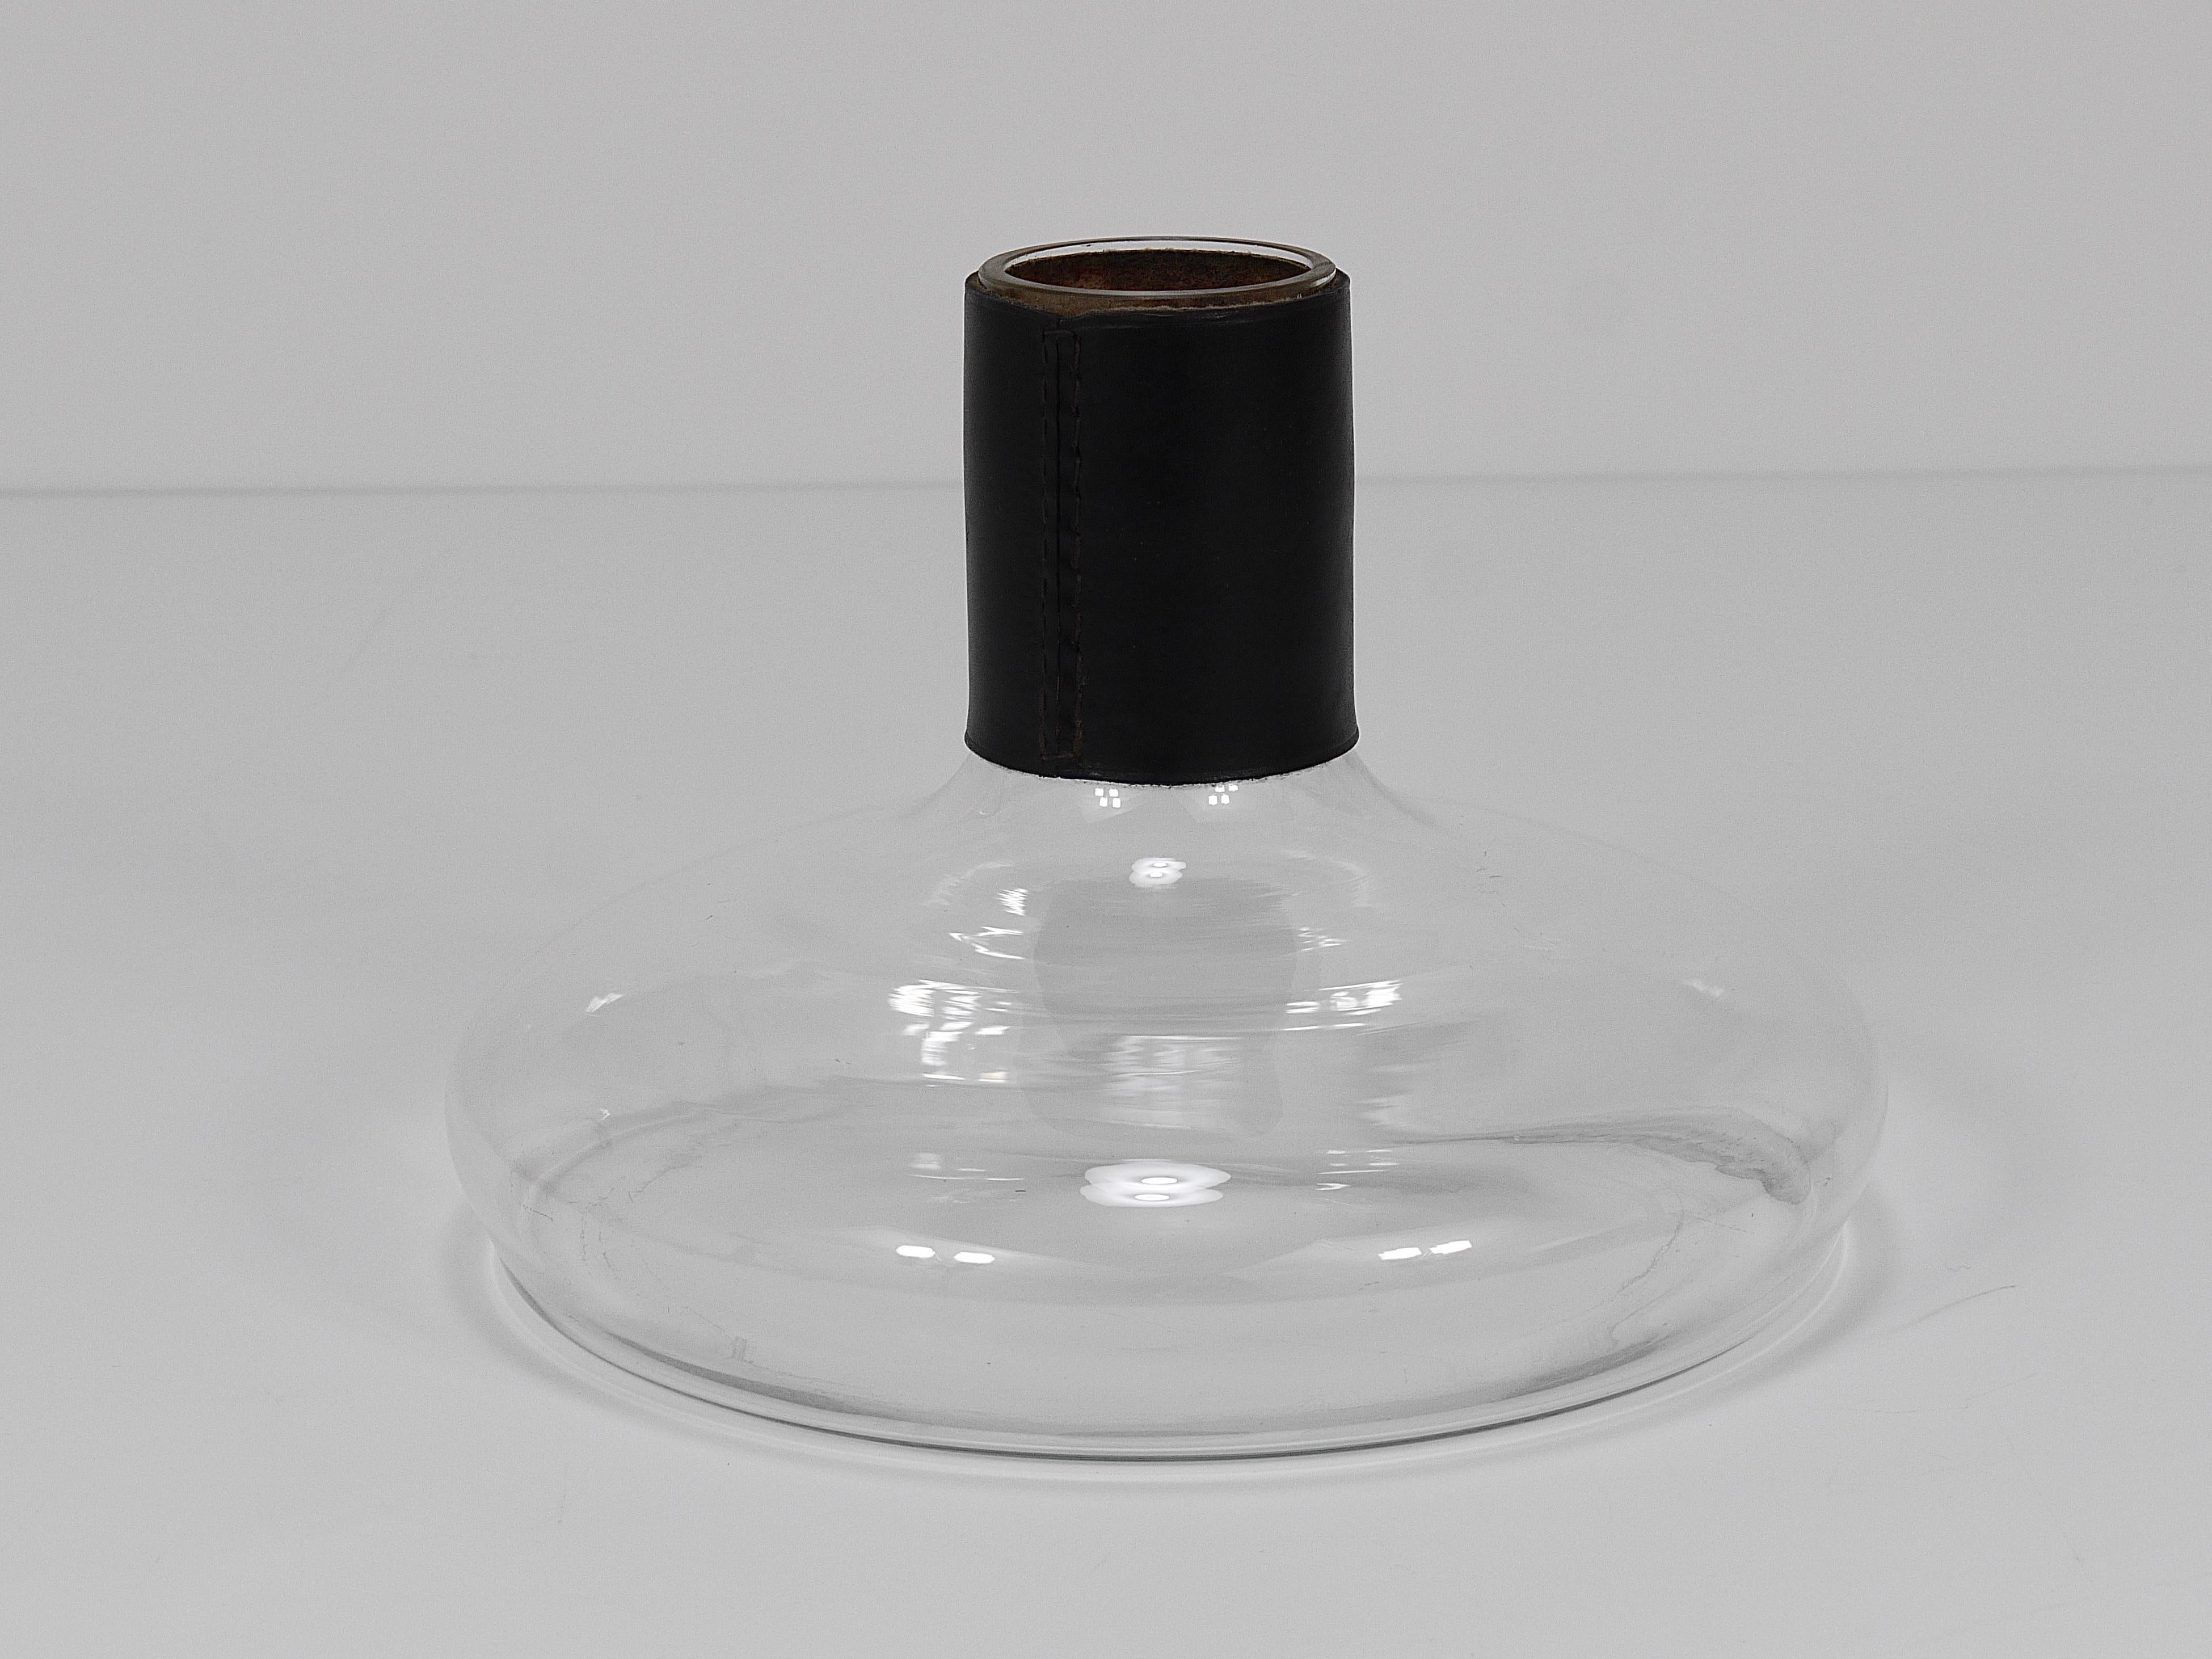 A beautiful minimalist MId Century Modern vase or decanter „Tuberkulinkolben